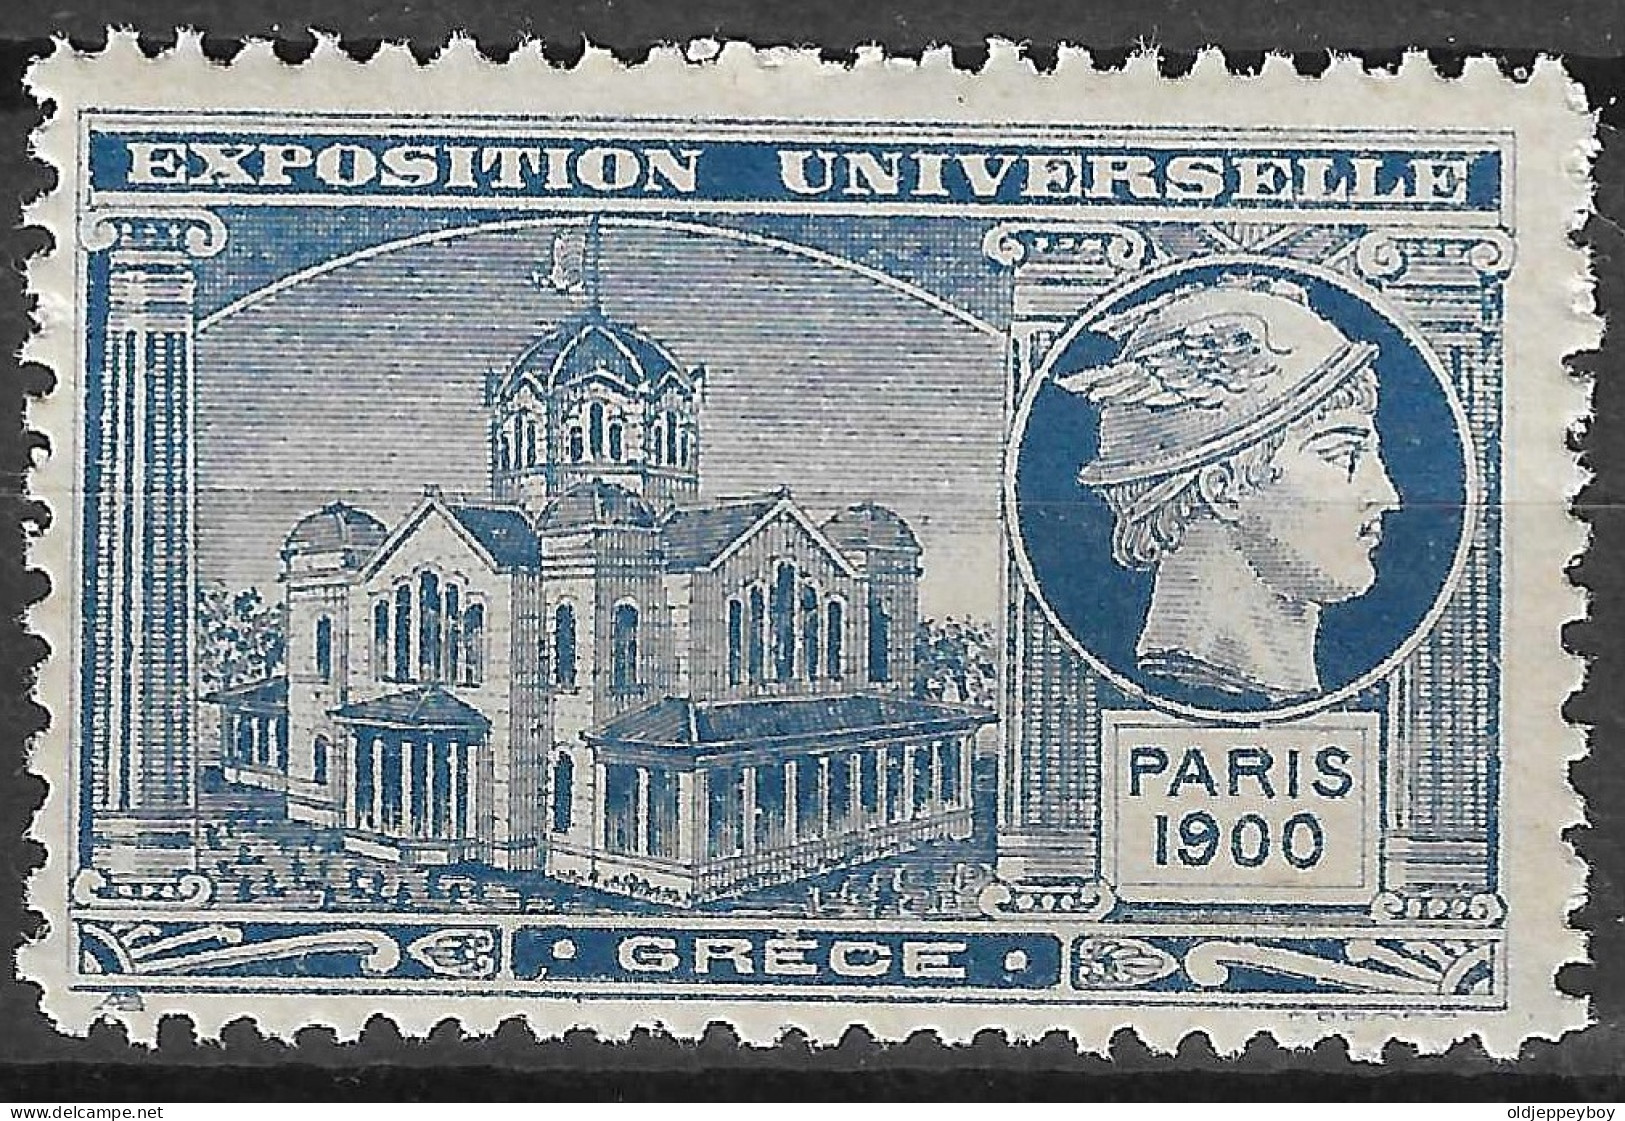 FRANCE ERINOPHILIE FAIR EXPOSITION UNIVERSELLE 1900 PARIS GRECE GREECE Vignette CINDERELLA MNH** - 1900 – Pariis (France)